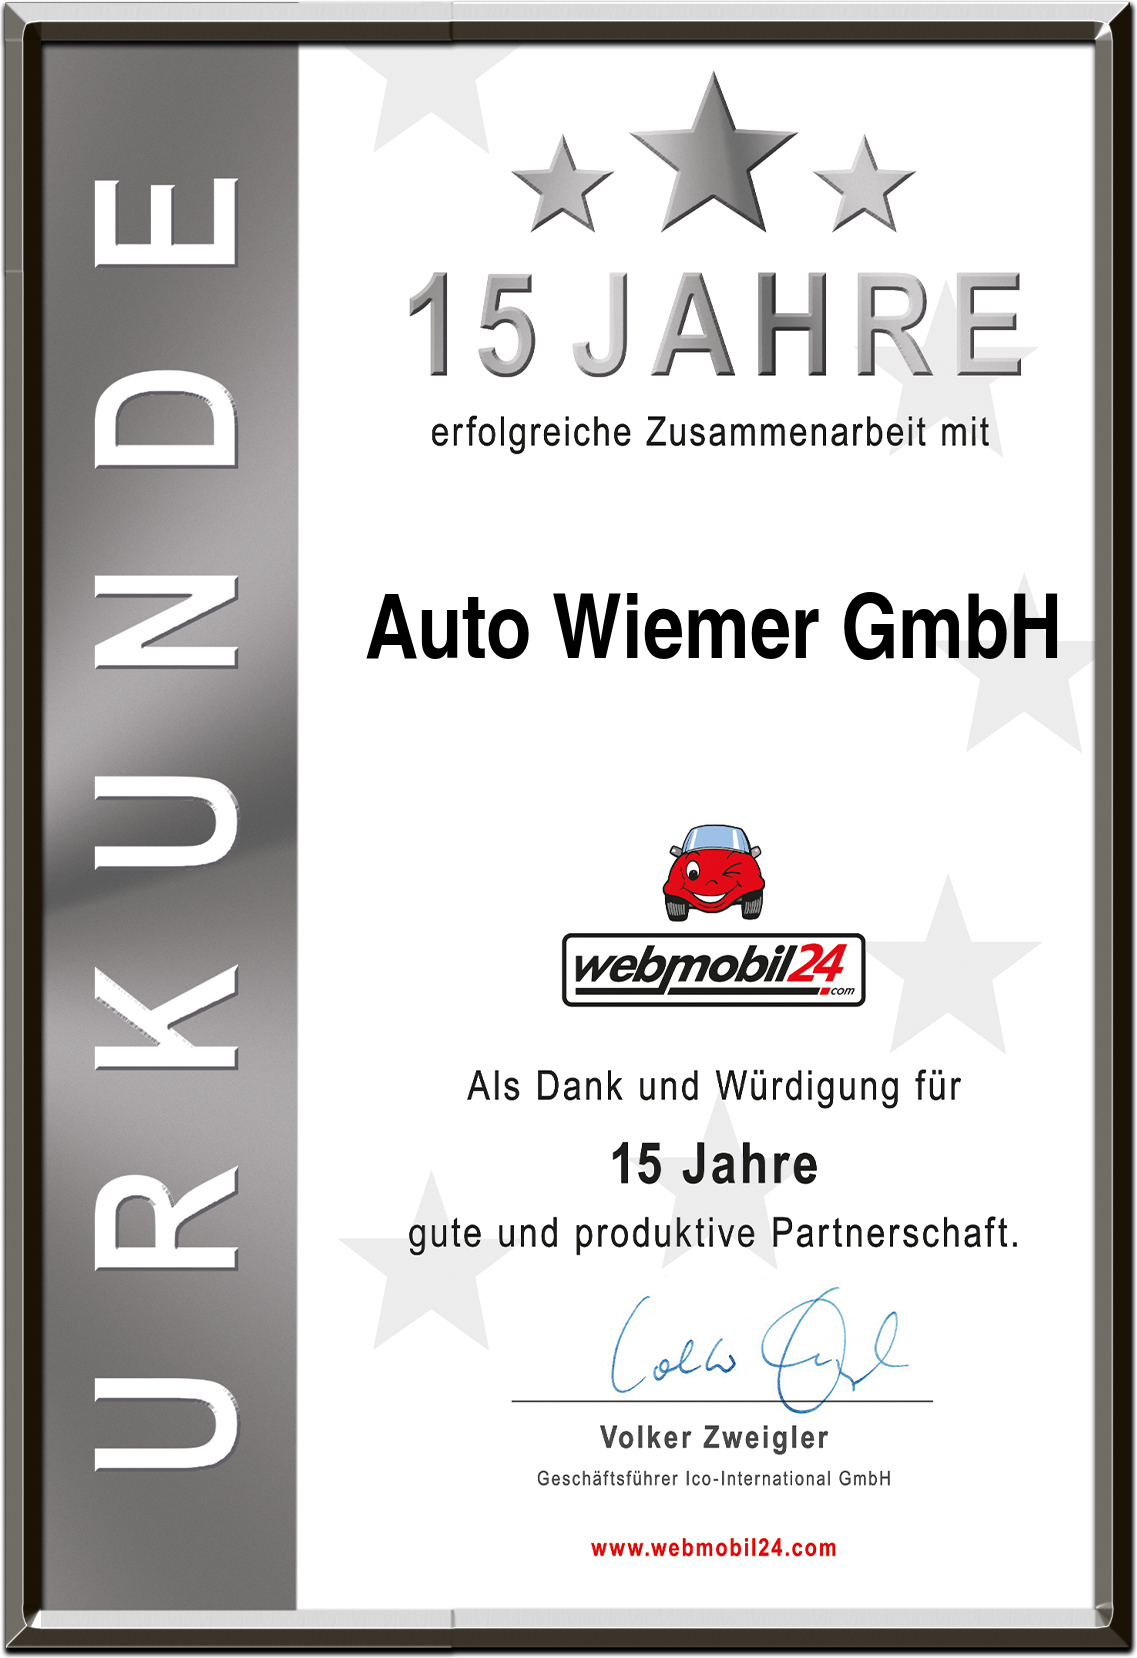 Auto Wiemer GmbH